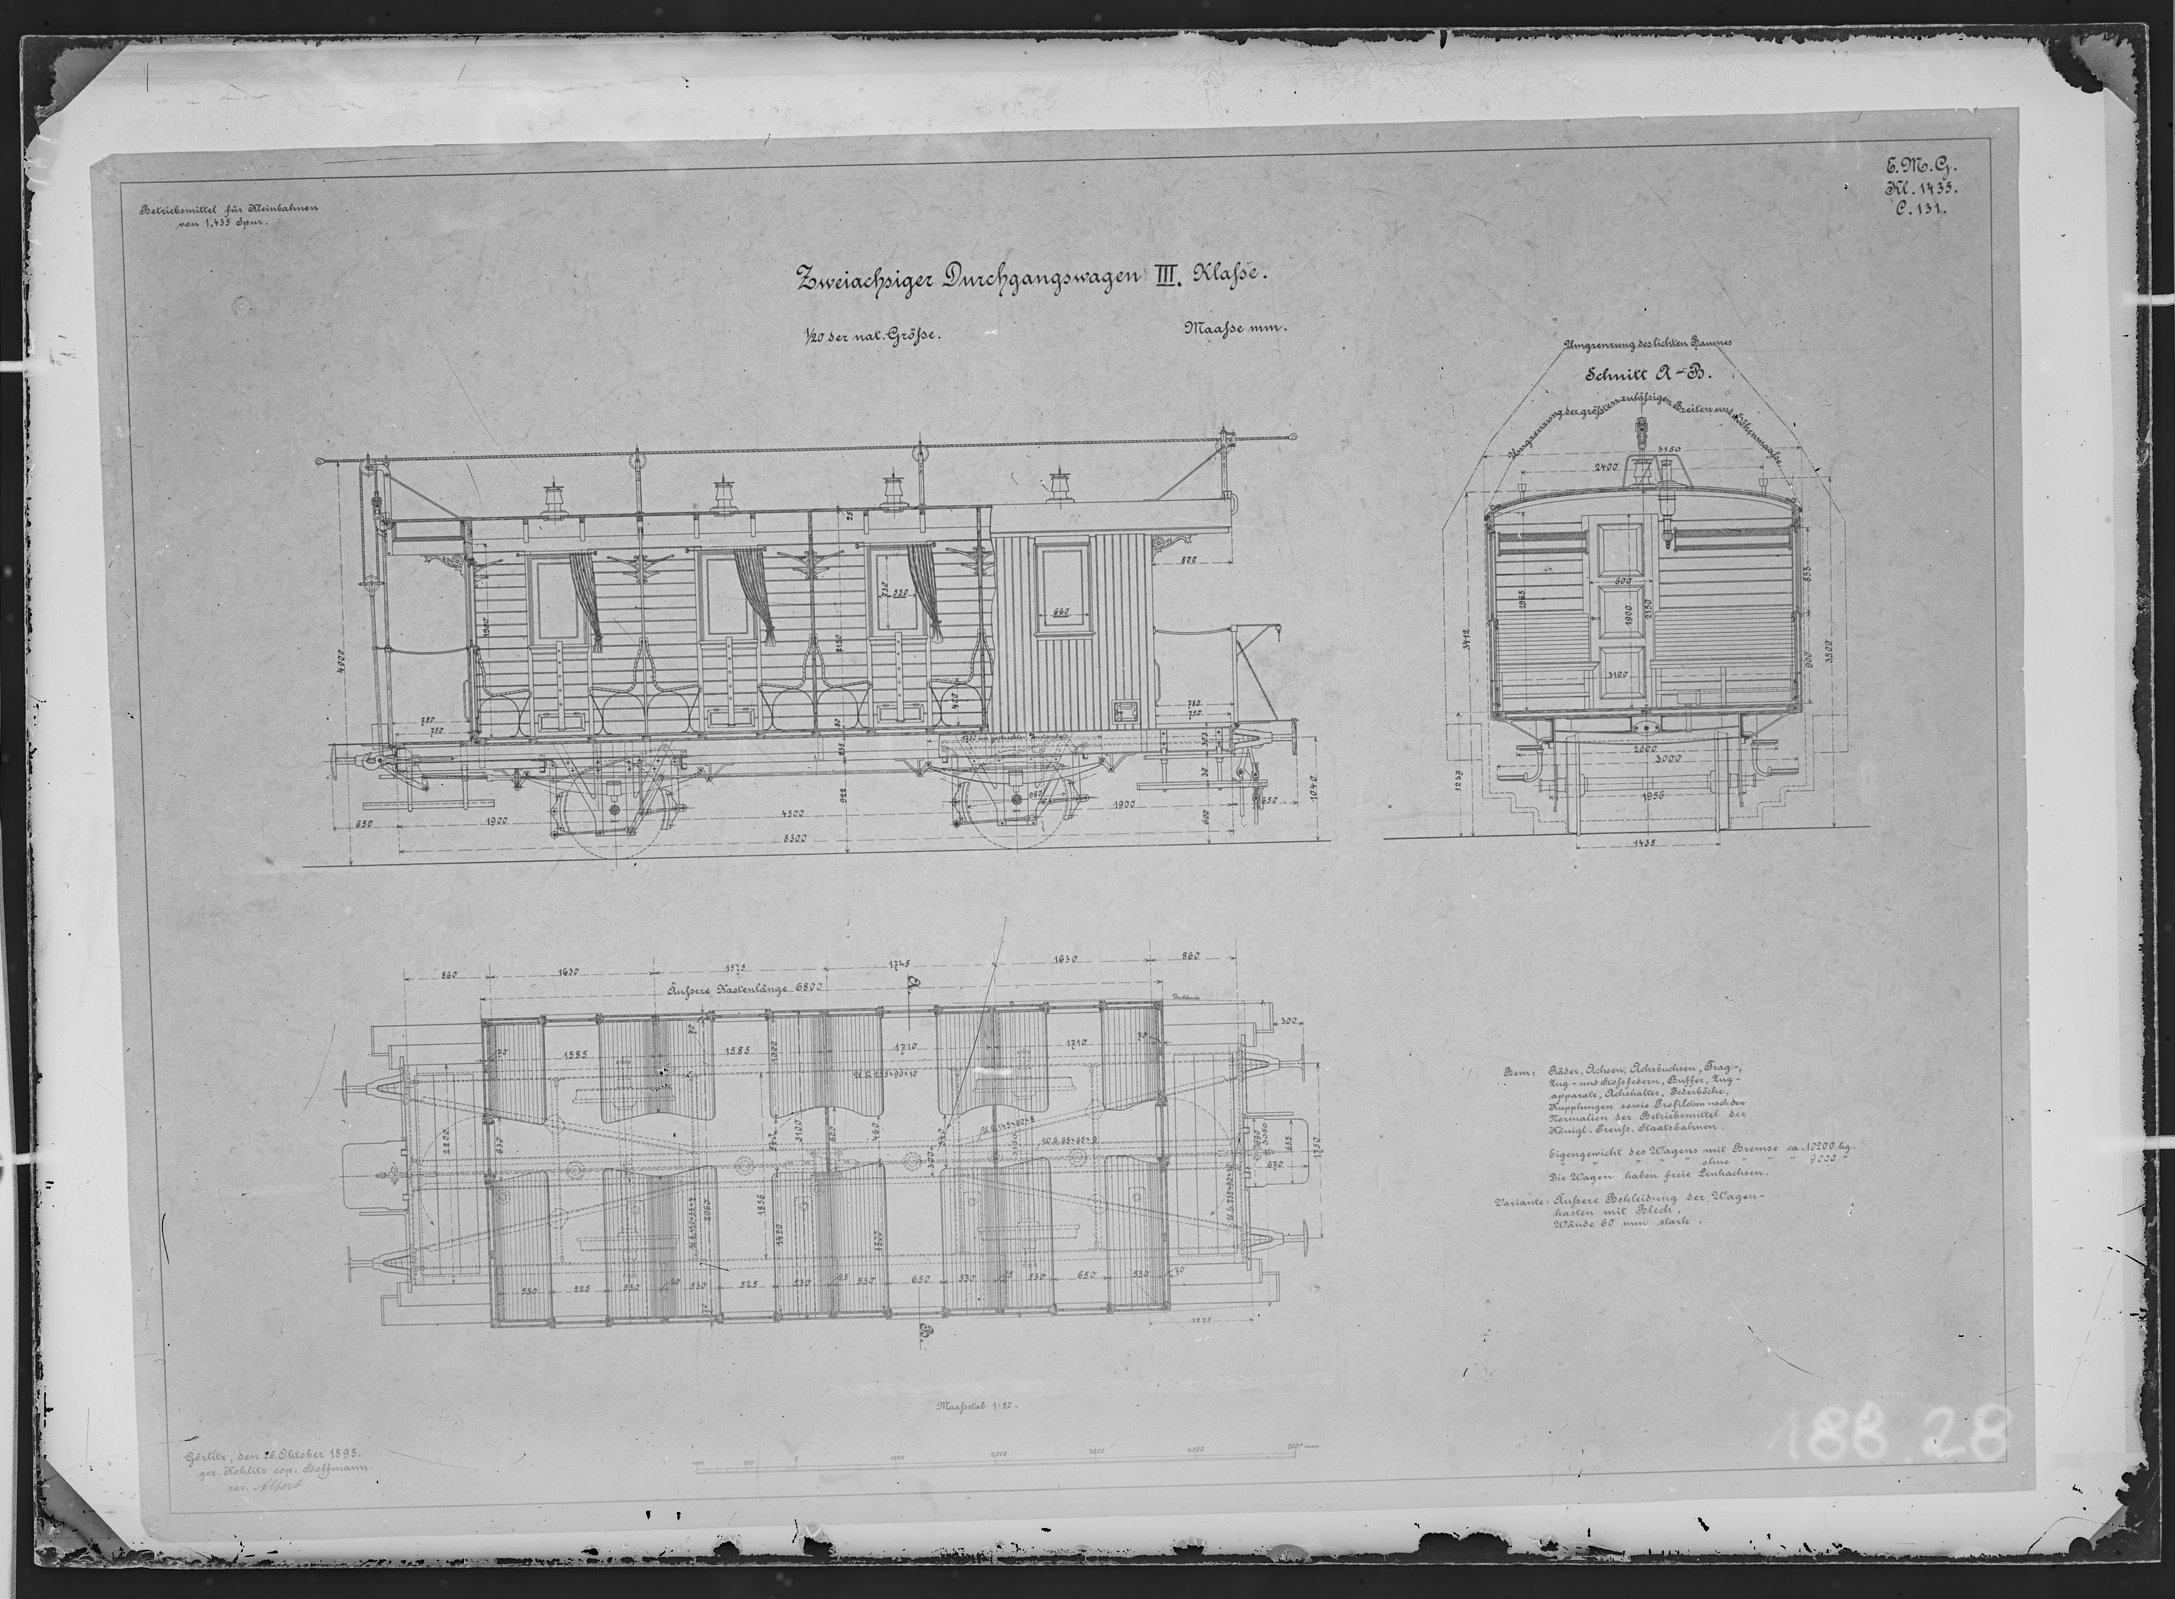 Fotografie: Maßzeichnung eines zweiachsigen Kleinbahn-Durchgangswagens dritter Klasse, Maßstab 1:20 (Spurweite: 1435 mm), 1895. (Verkehrsmuseum Dresden CC BY-NC-SA)